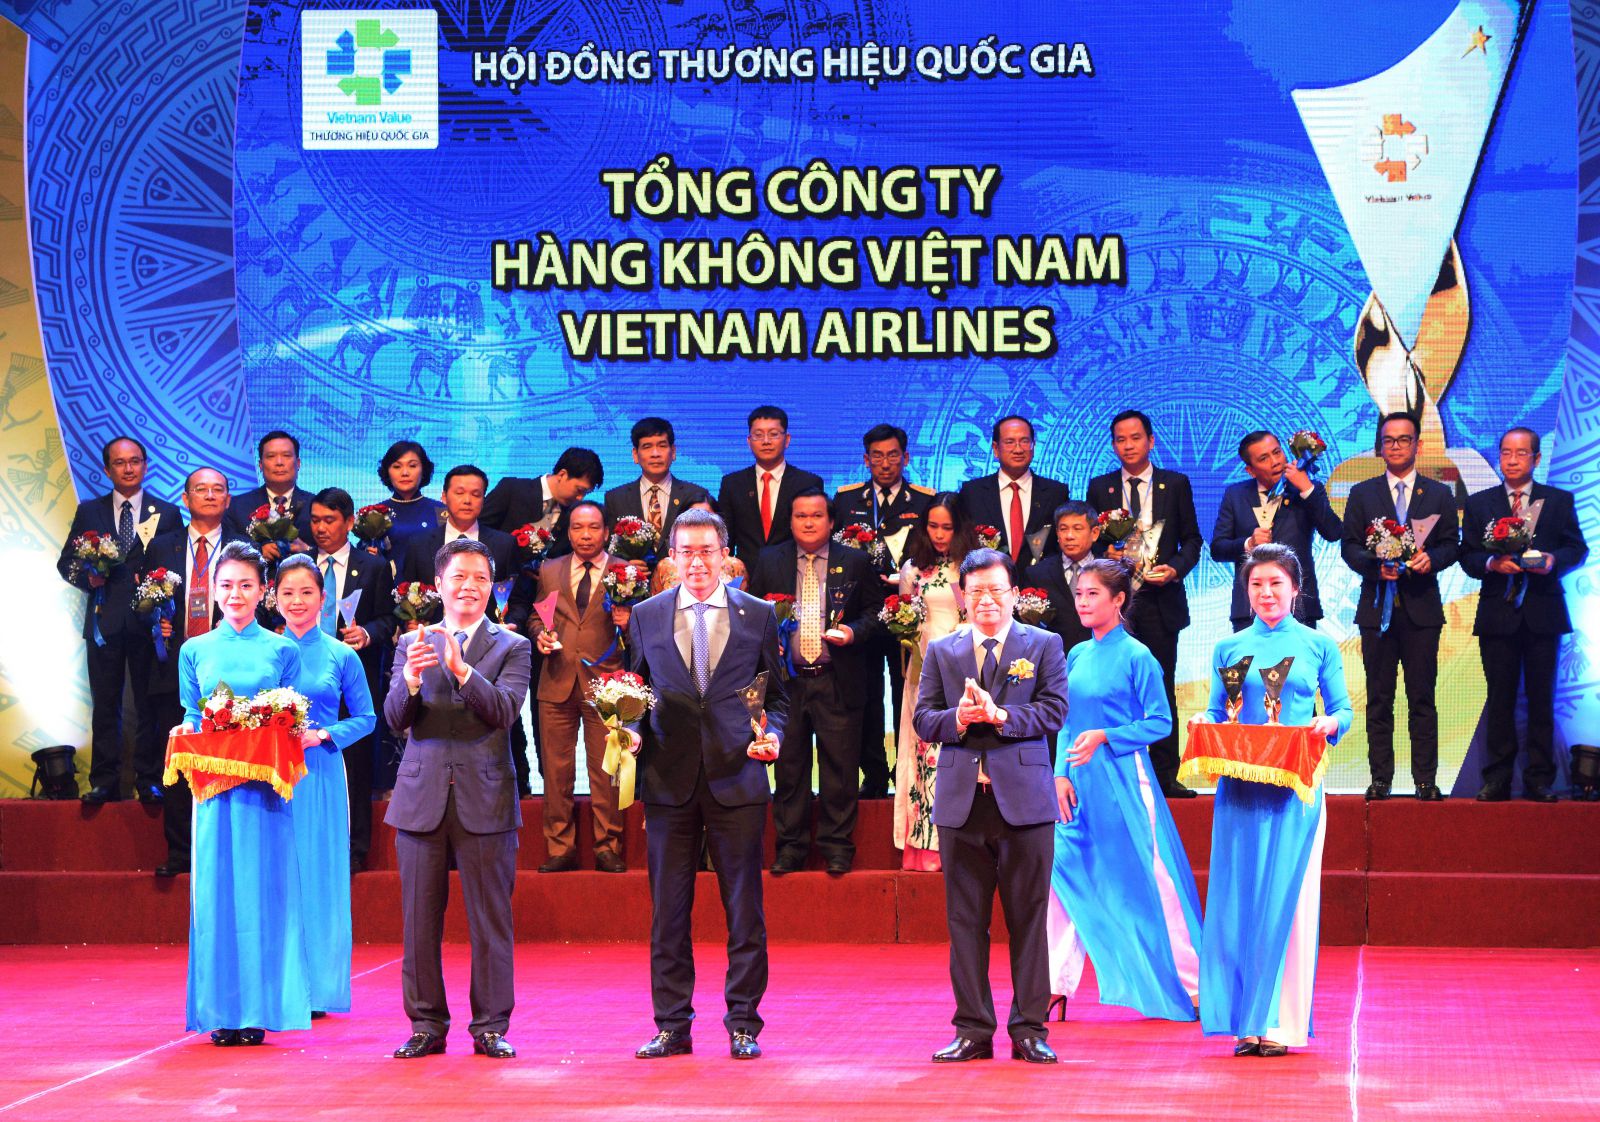 Ông Đặng Ngọc Hòa – Phó Tổng Giám đốc Vietnam Airlines nhận biểu trưng và hoa kỷ niệm do Phó Thủ tướng Chính Phủ Trịnh Đình Dũng và Bộ Trưởng Bộ Công thương Trần Tuấn Anh trao tặng tại Lễ công bố các doanh nghiệp có sản phẩm đạt Thương hiệu Quốc gia năm 2018